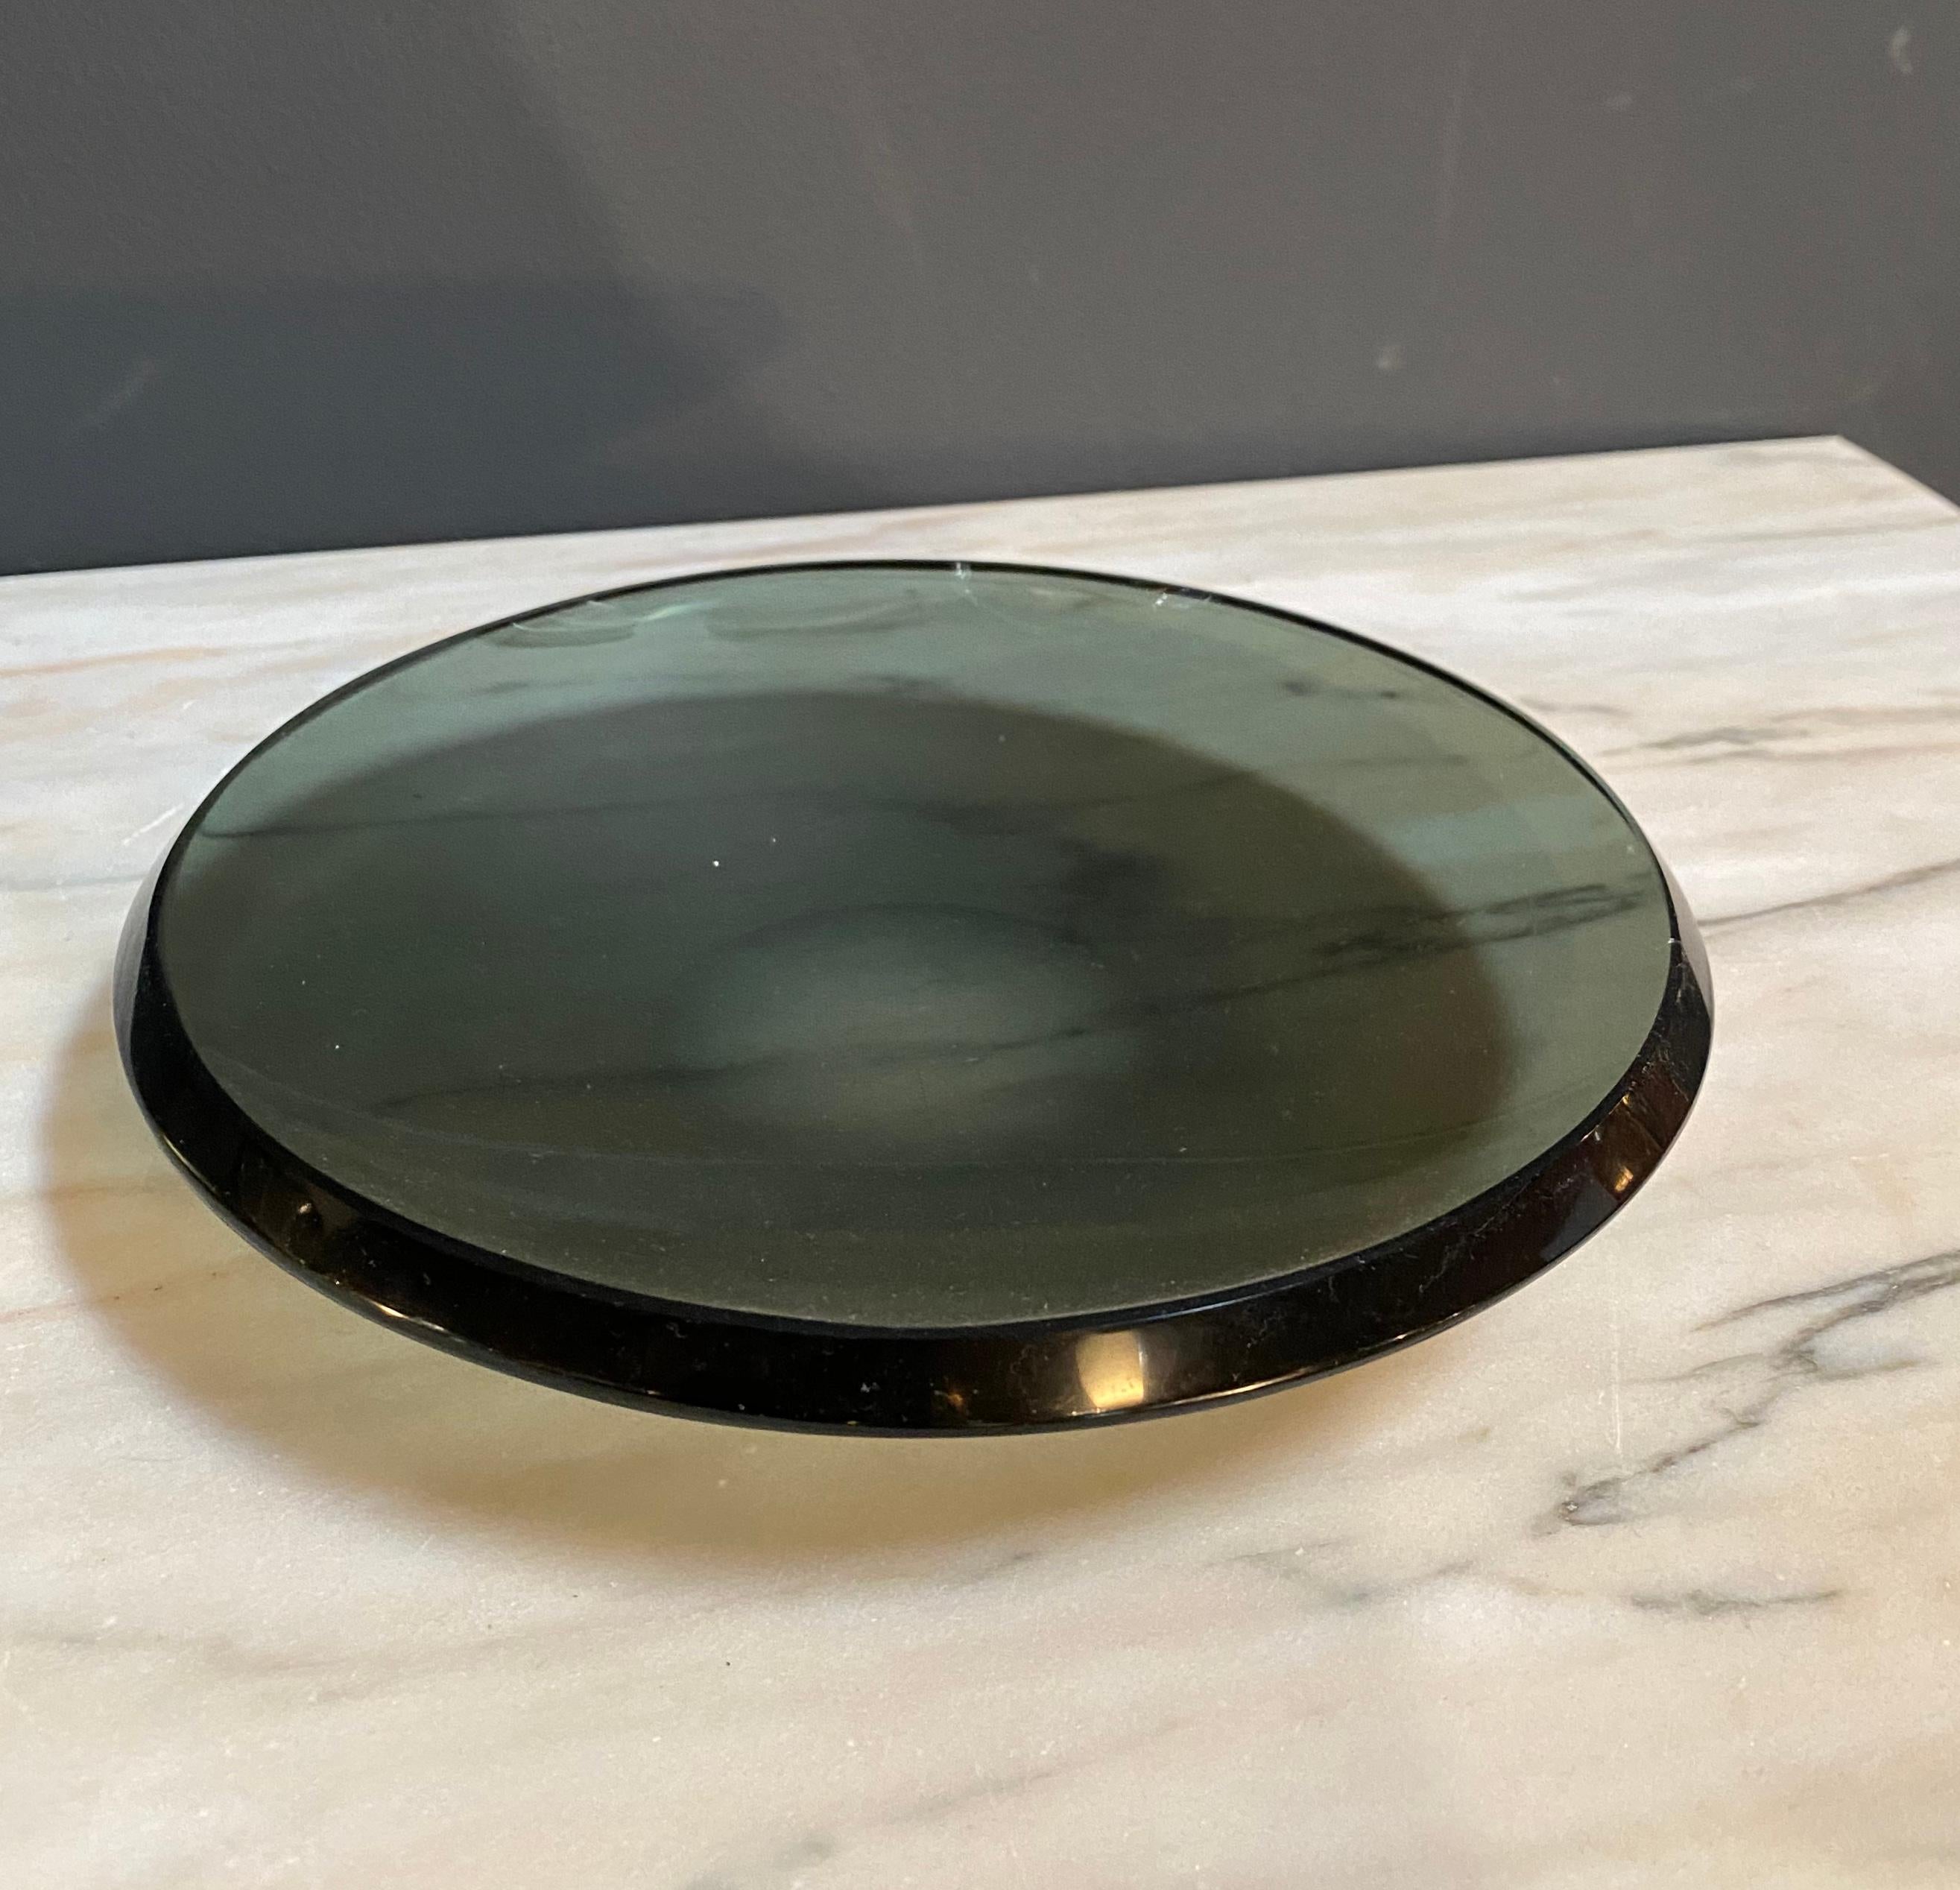 A bright black glass beveled edge glass dish or bowl by Fontana Arte signed FX on the edge as shown.
Model 2007 A, circa 1960.
Literature Quaderno Fontana Arte no 3, 1961 p.18.